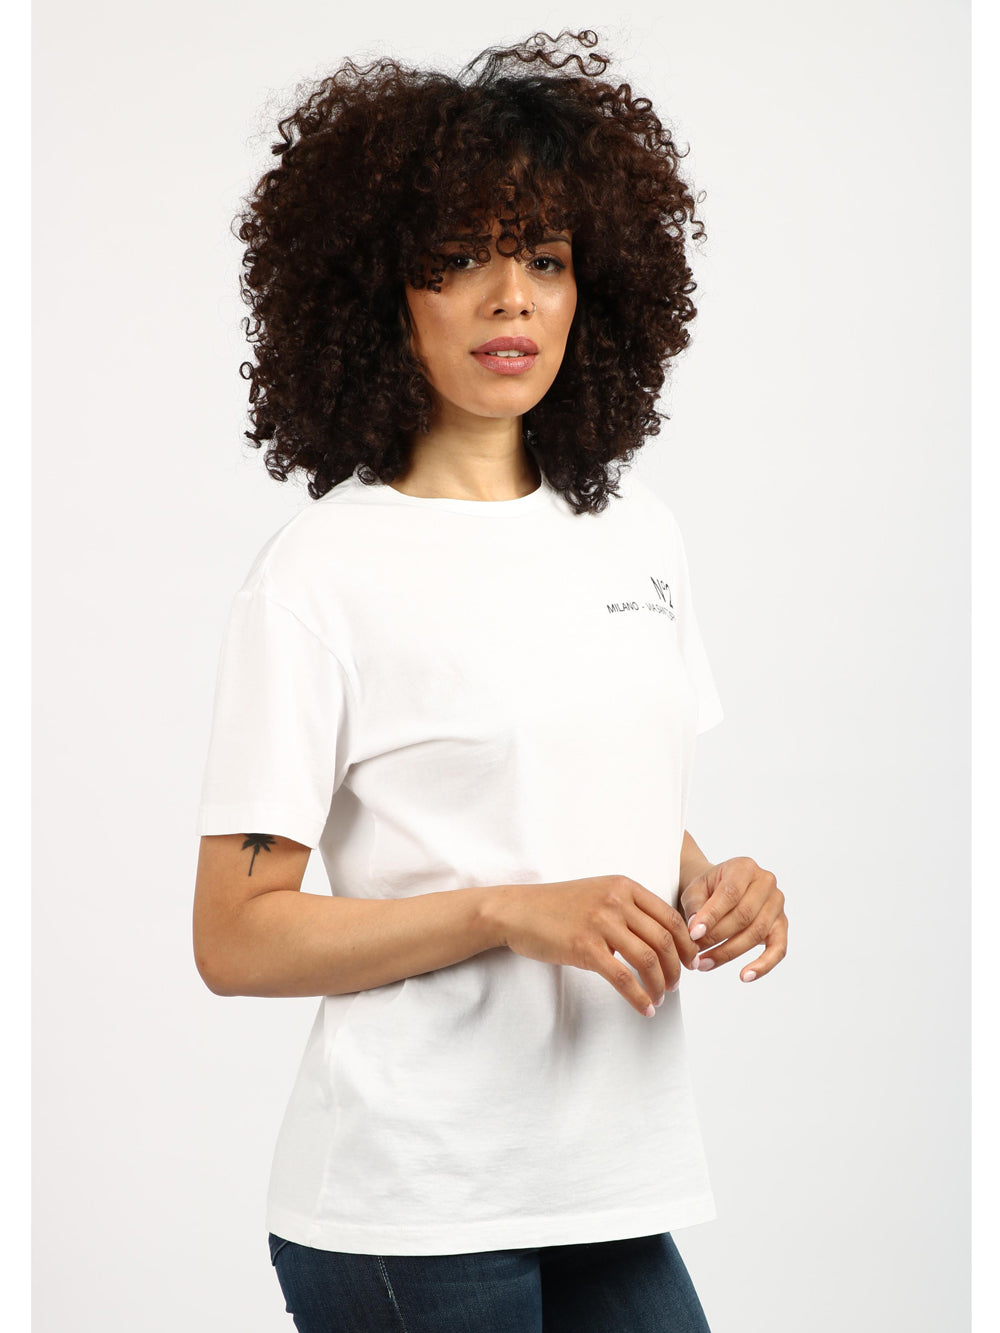 N°21 T-Shirt Girocollo in Cotone Bianca con Logo Bianco